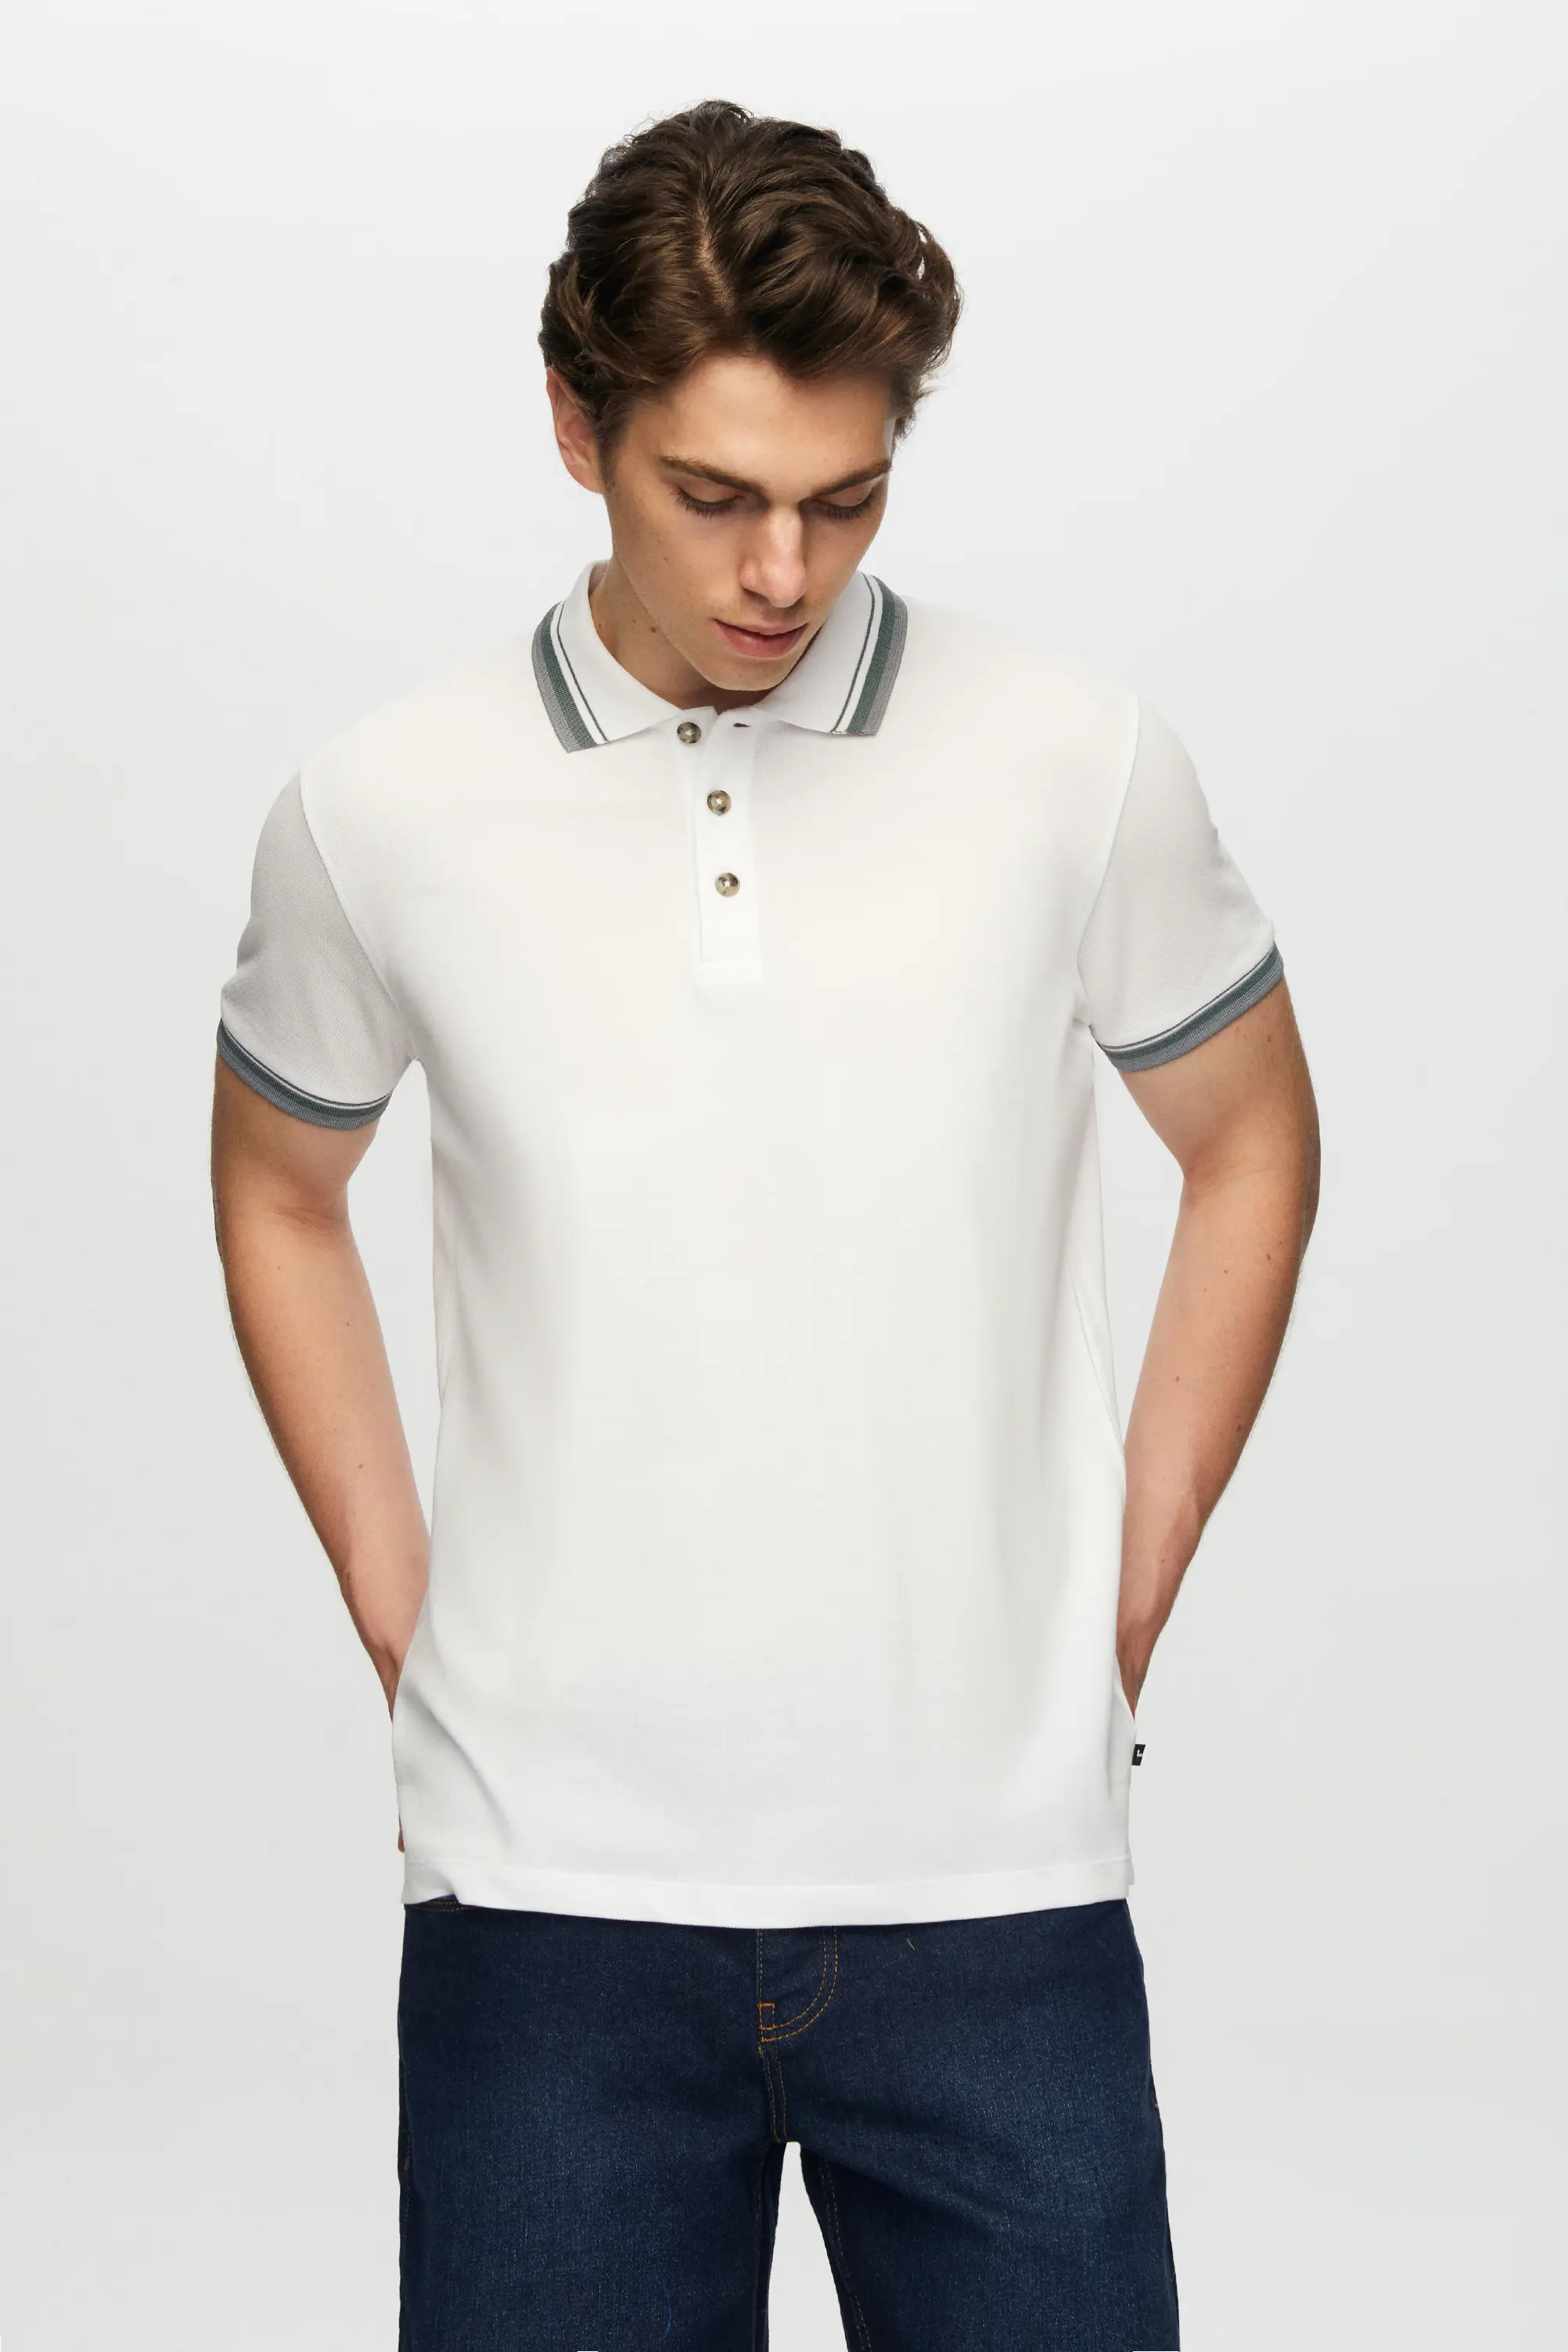 Damat Tween Tween Beyaz Düğmeli Polo Yaka T-Shirt. 2